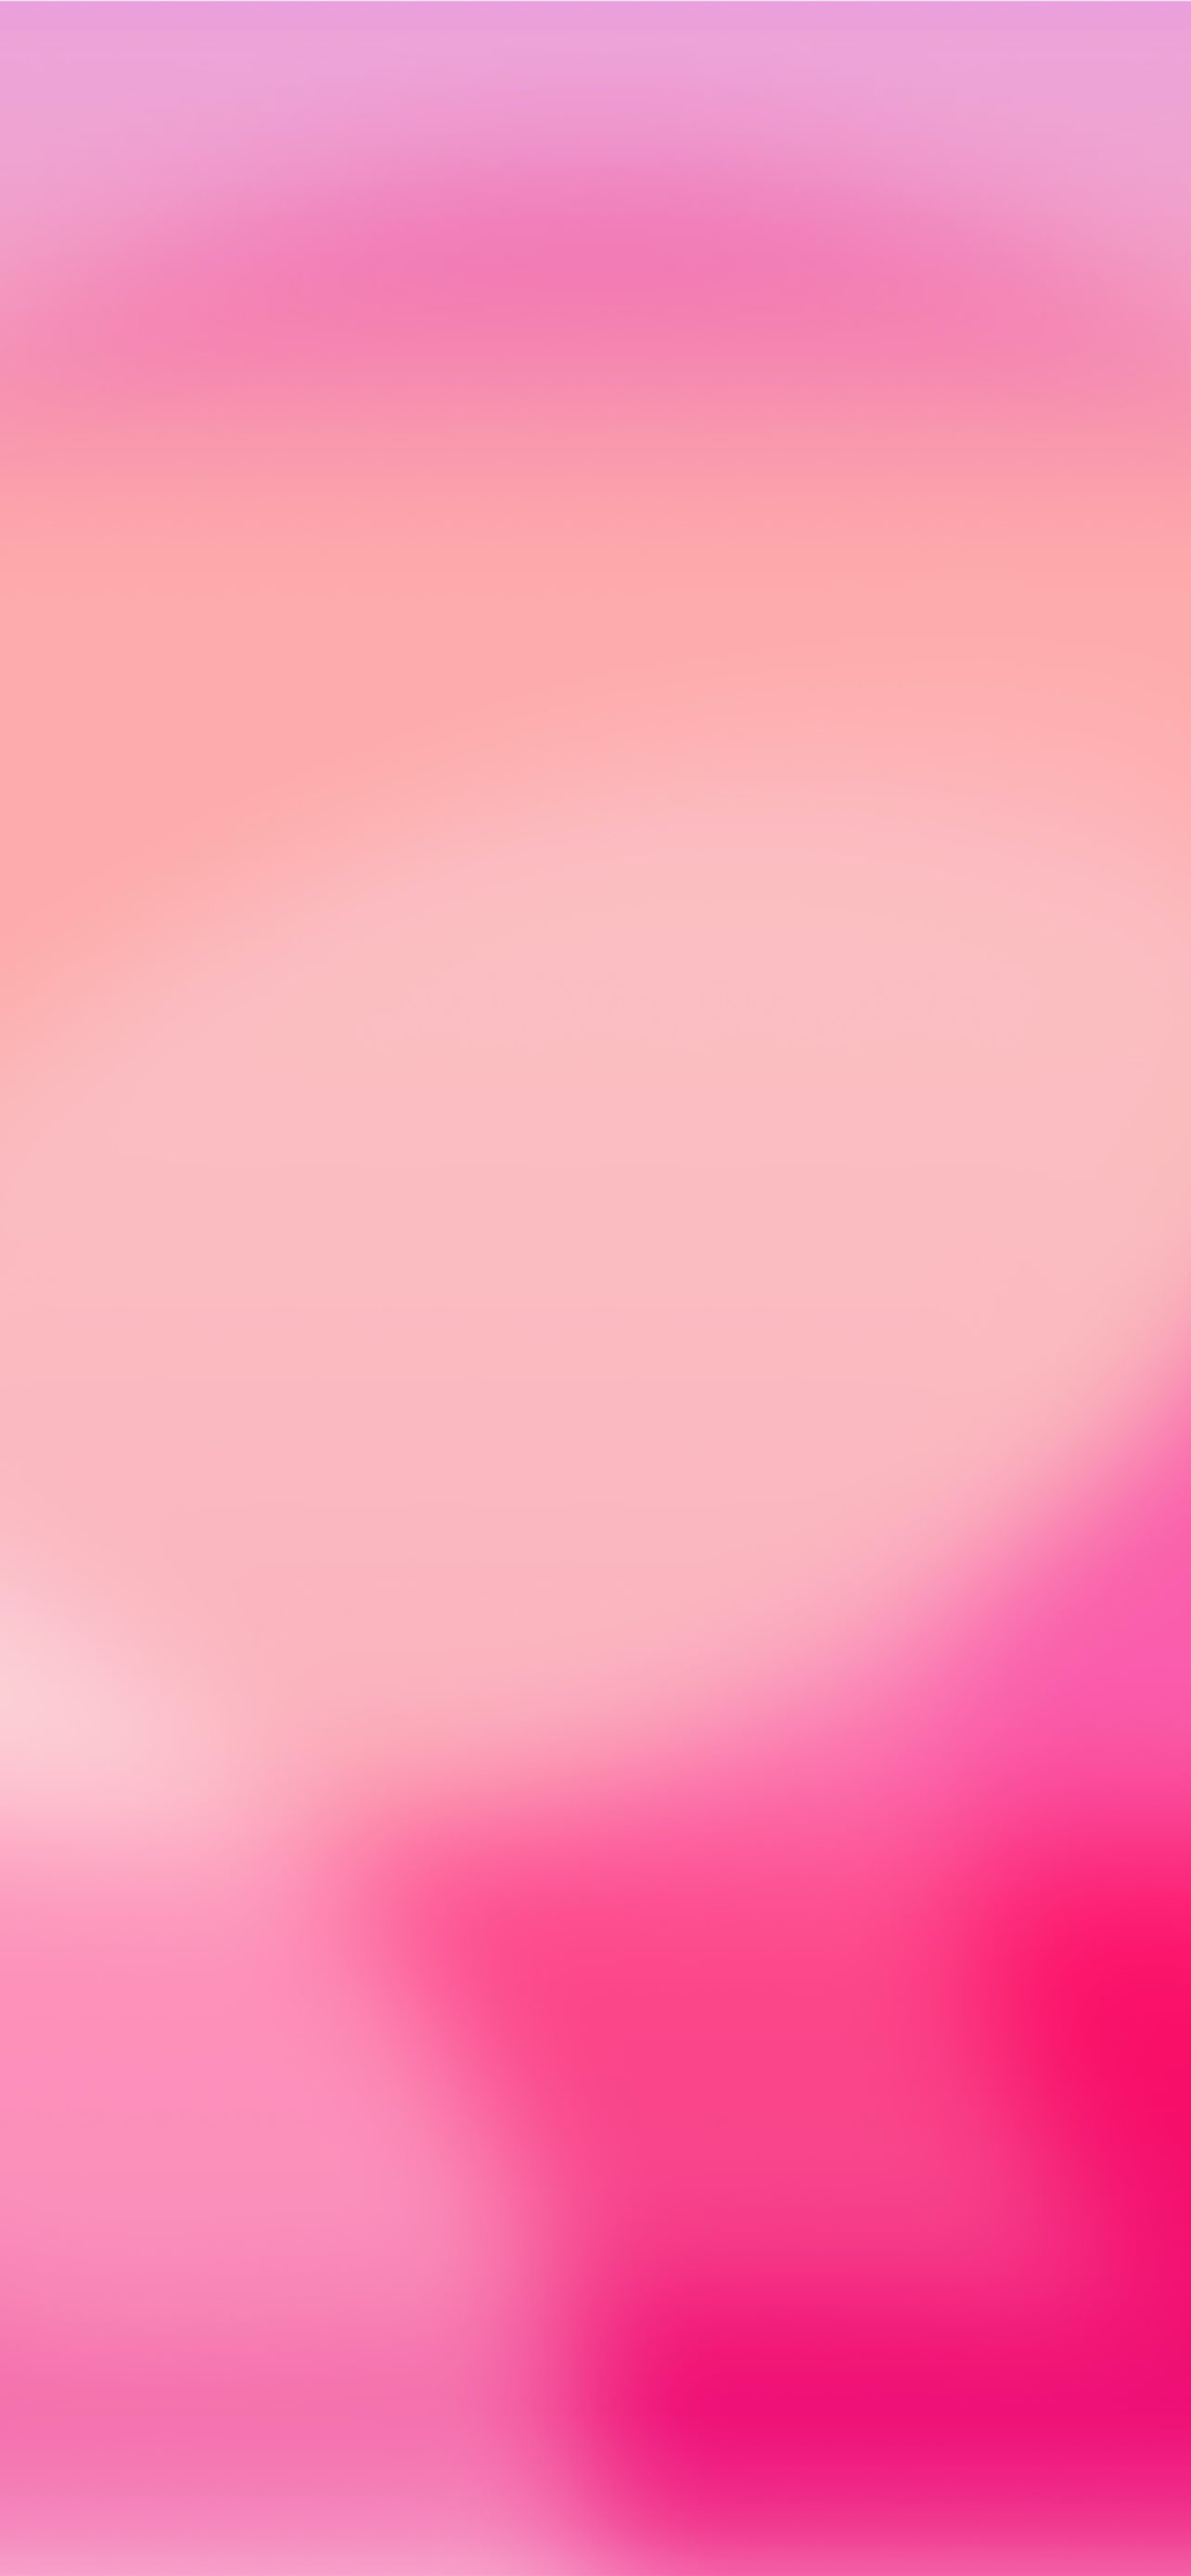 Hình nền iPhone hình minh họa đèn nháy màu hồng trắng (Pink and white light illustration iPhone wallpapers): Bạn đang tìm kiếm một hình nền iPhone đầy phong cách và tinh tế? Hãy xem những hình nền iPhone với hình minh họa đèn nháy màu hồng trắng này! Sự kết hợp giữa sắc hồng nữ tính và sắc trắng tinh tế sẽ mang đến cho bạn một phong cách riêng đầy tinh tế và độc đáo.